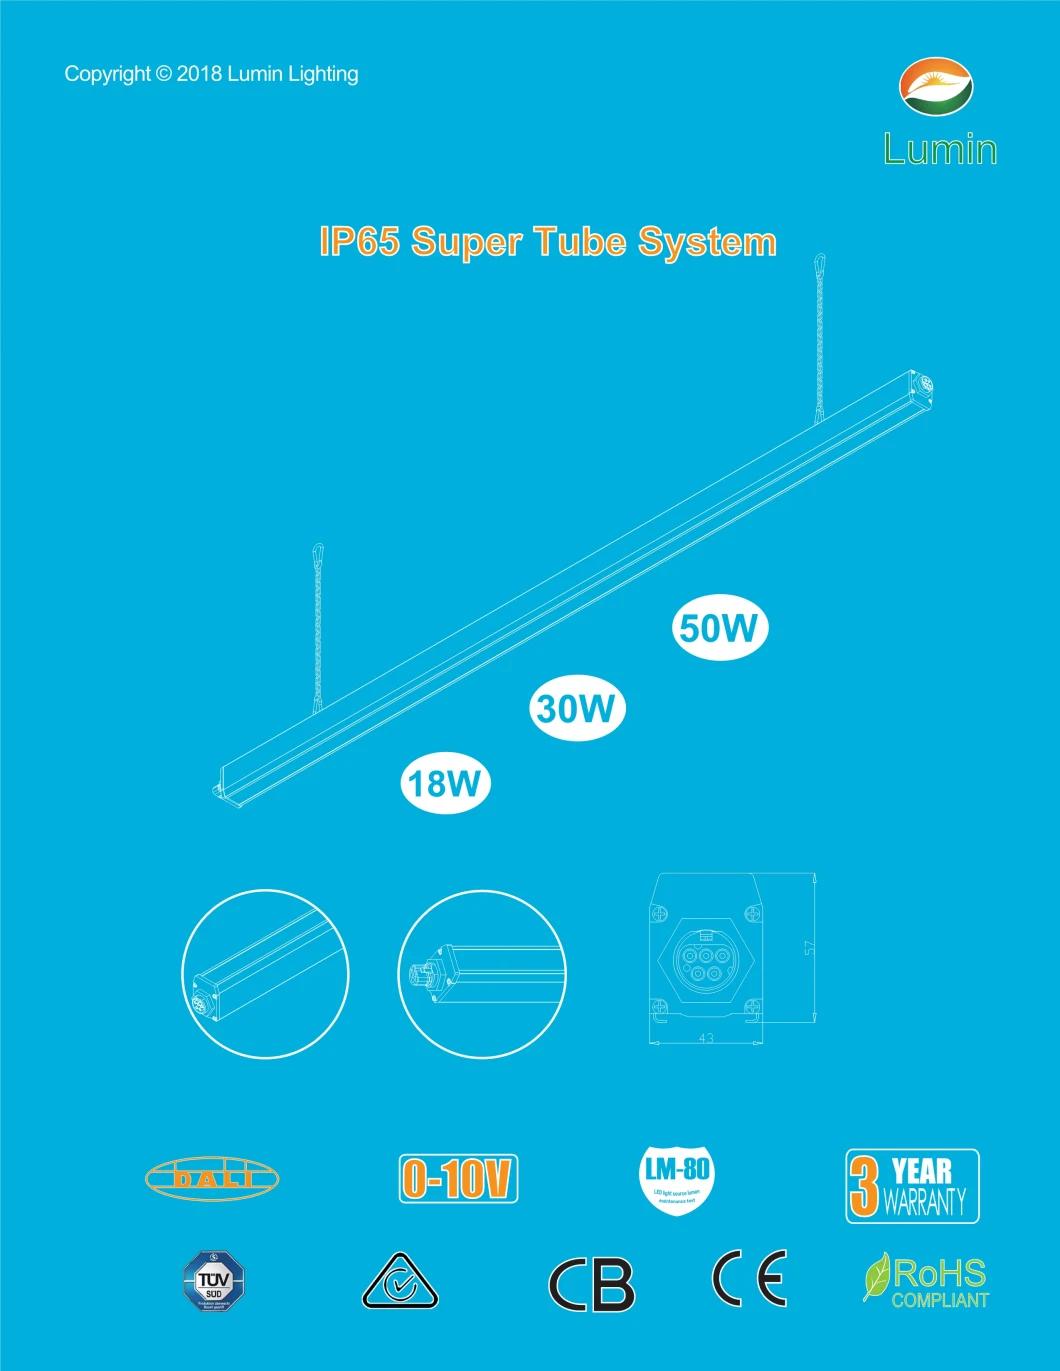 Super Tube System LED Linear Light Trunking Light for Industrial Lighting